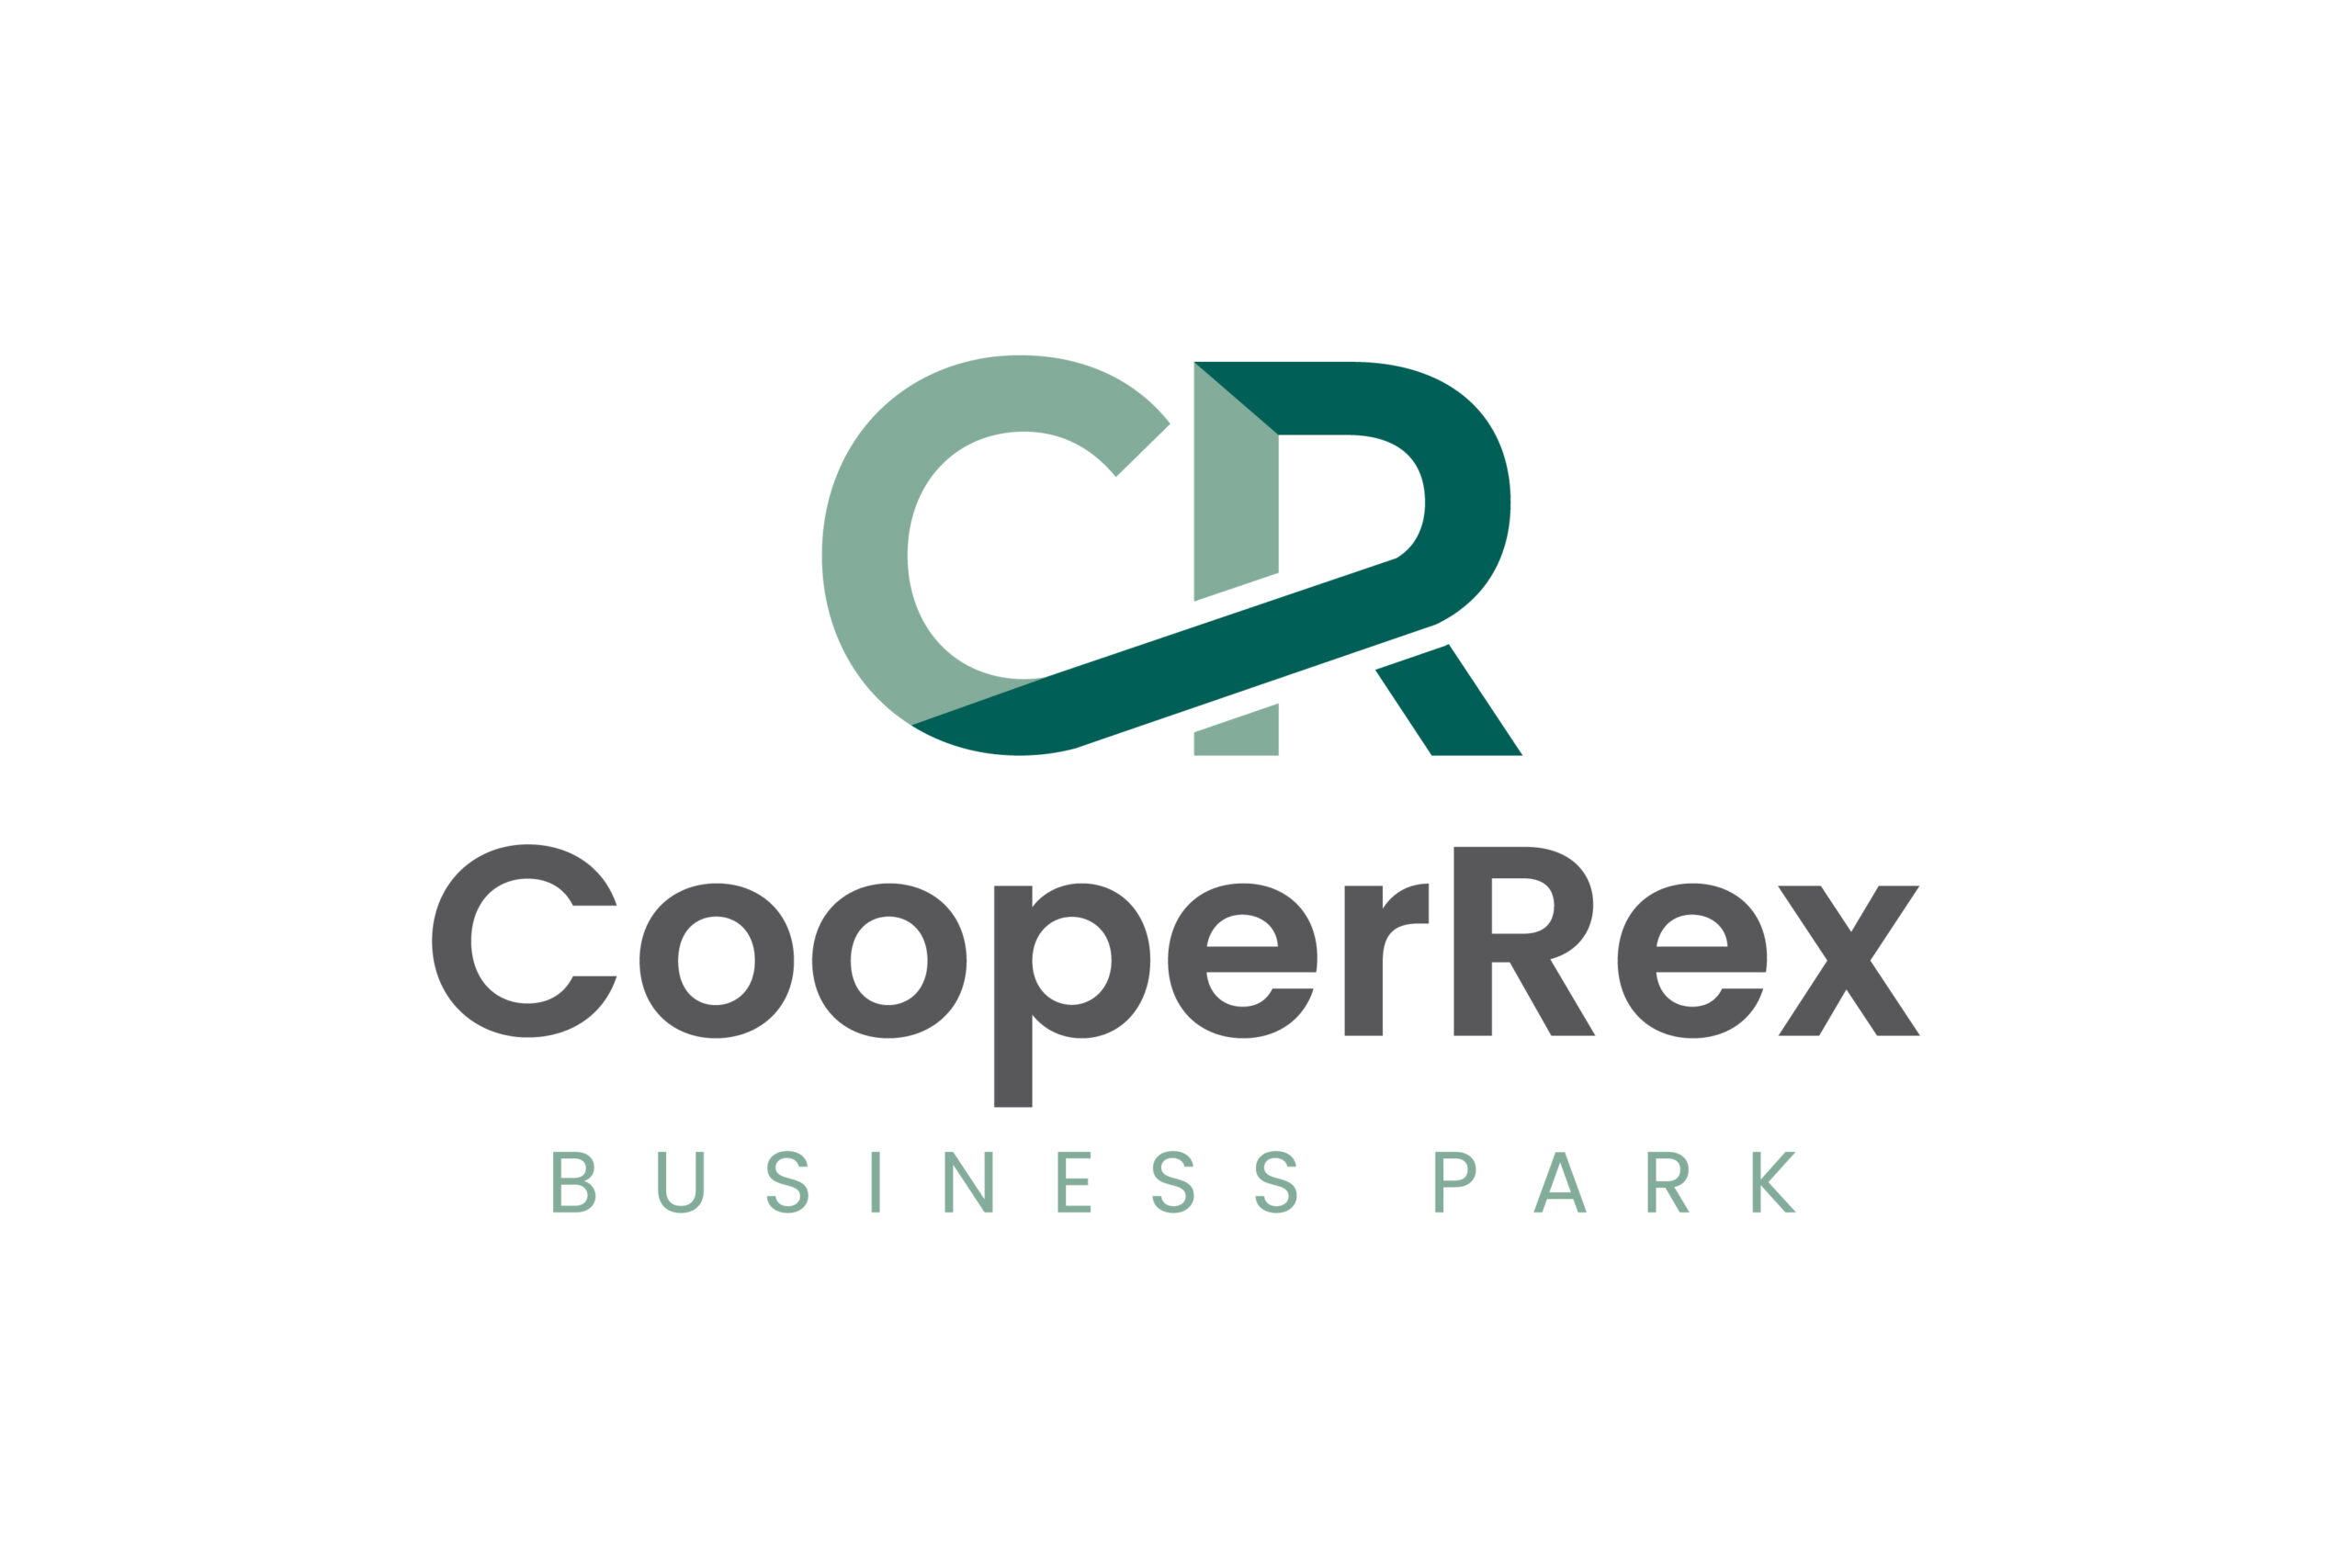 CooperRex Business Park